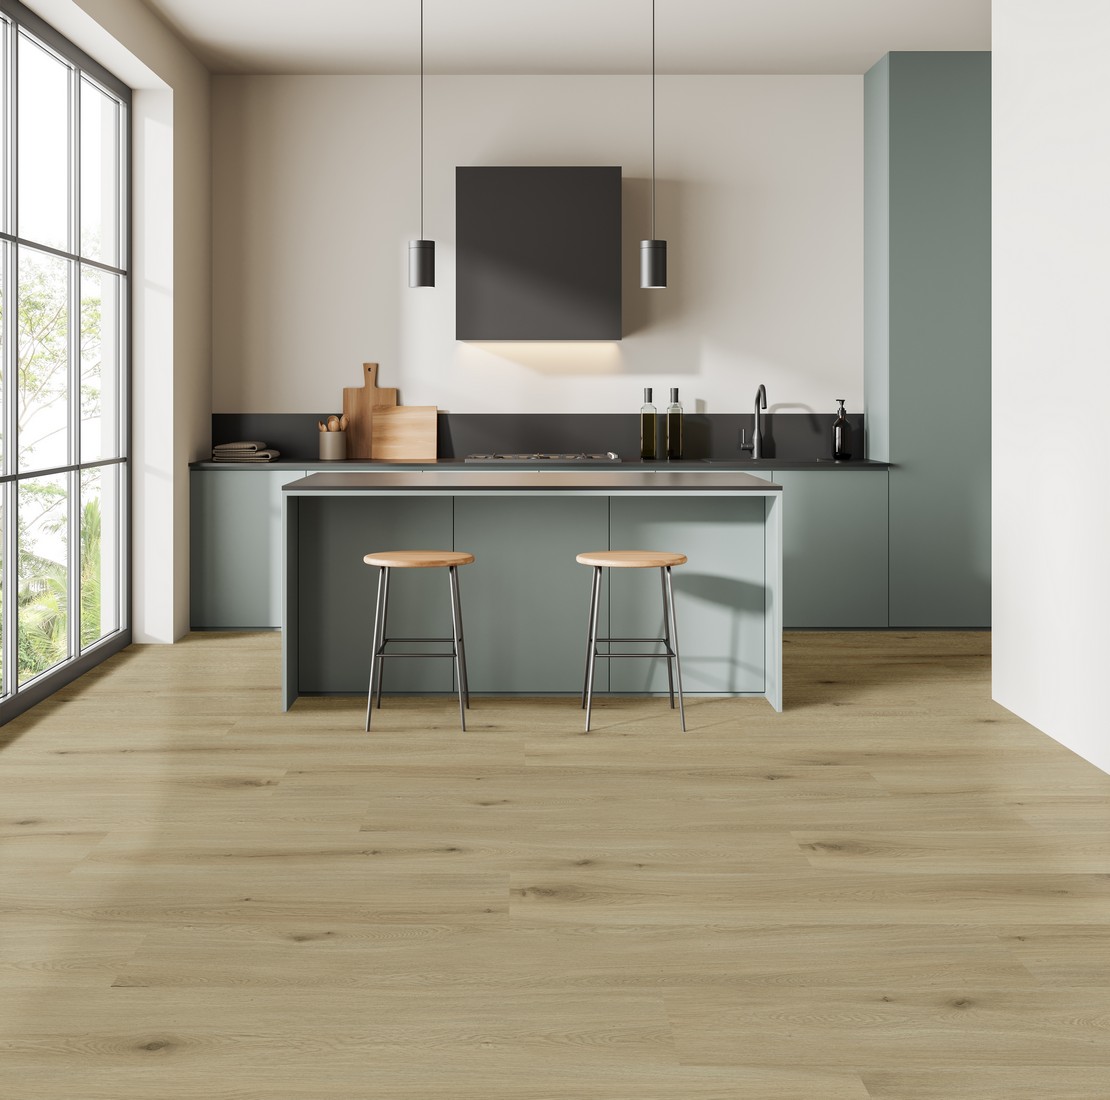 Cucina moderna minimal con isola e pavimento effetto legno beige - Ambienti Iperceramica